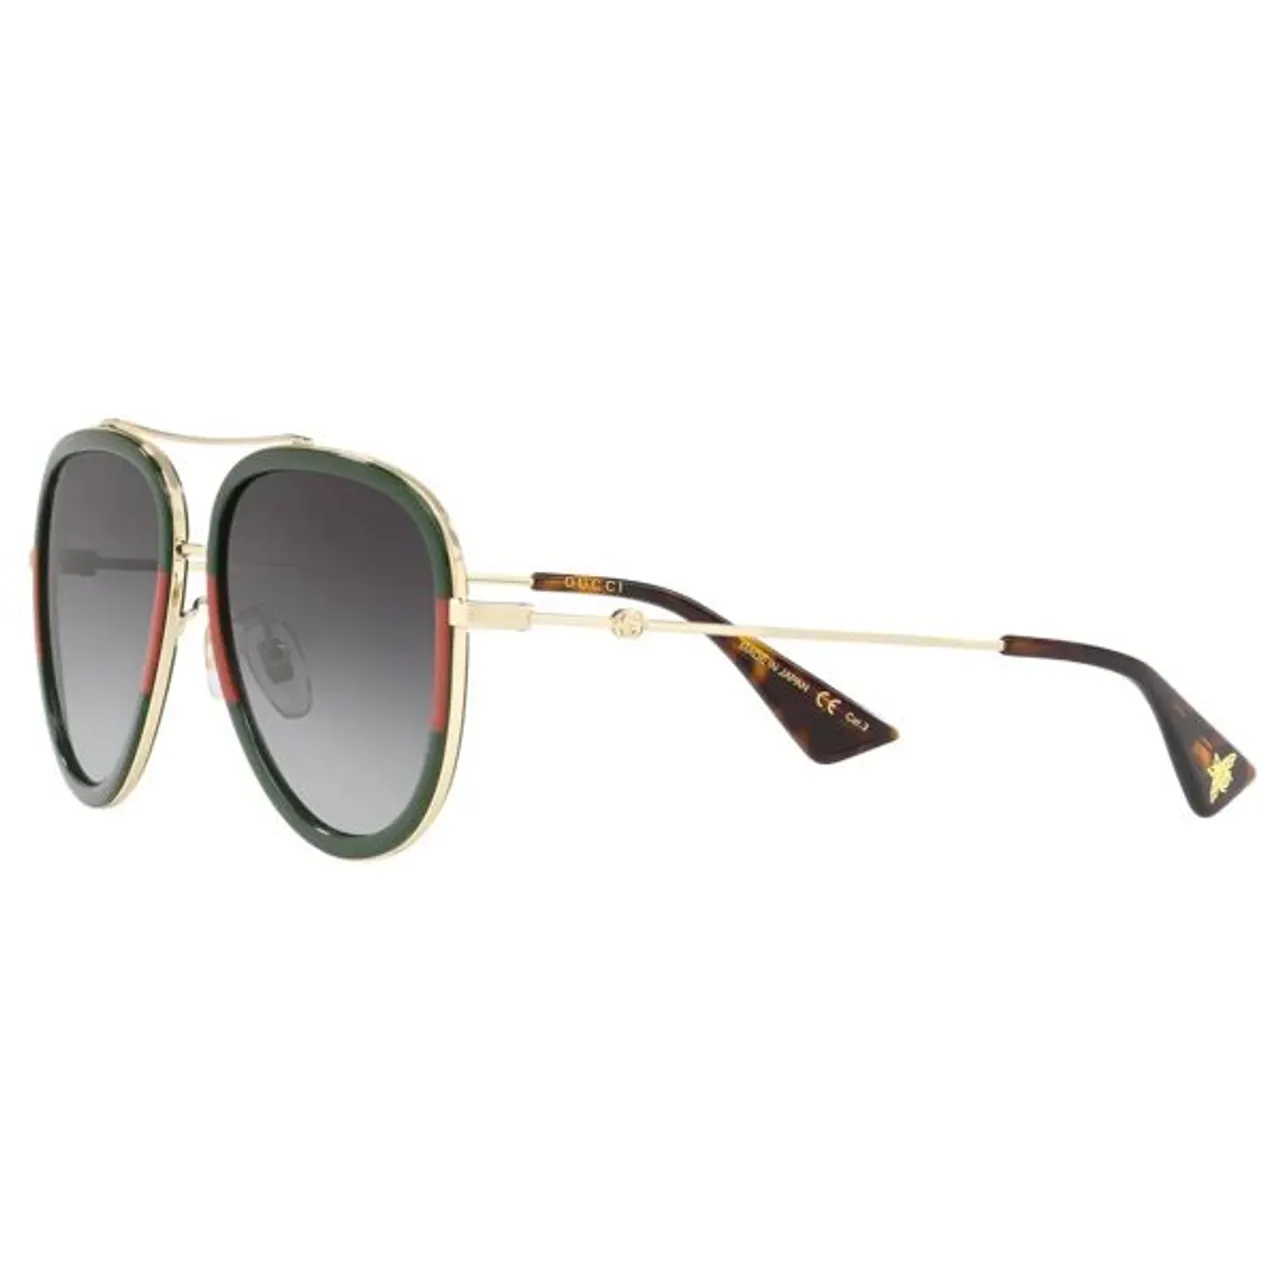 Gucci GG0062S Aviator Sunglasses - Multi/Grey Gradient - Female